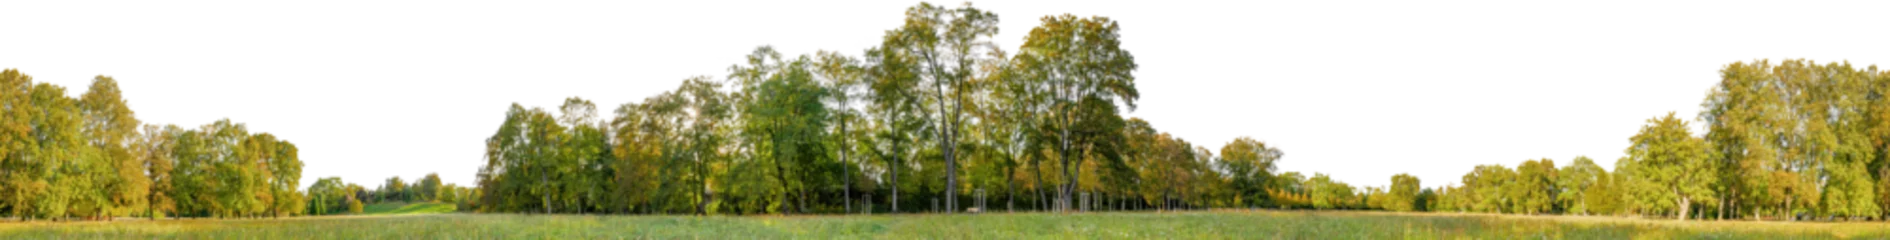 Möbelaufkleber tree line trees autumn xl horizontal seamless arch viz cutout © Mathias Weil